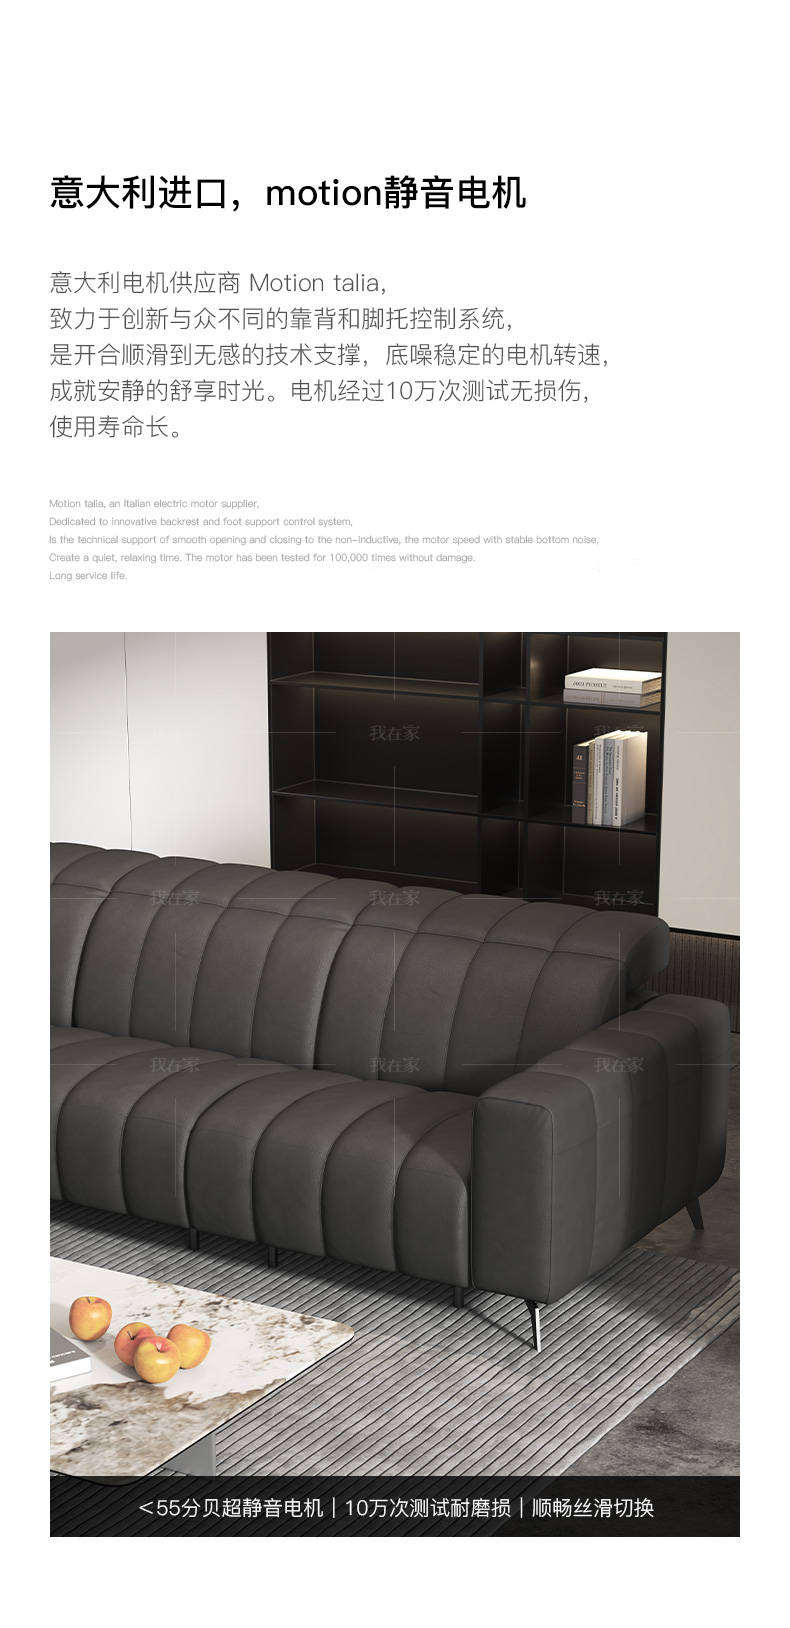 意式极简风格小波浪功能沙发的家具详细介绍